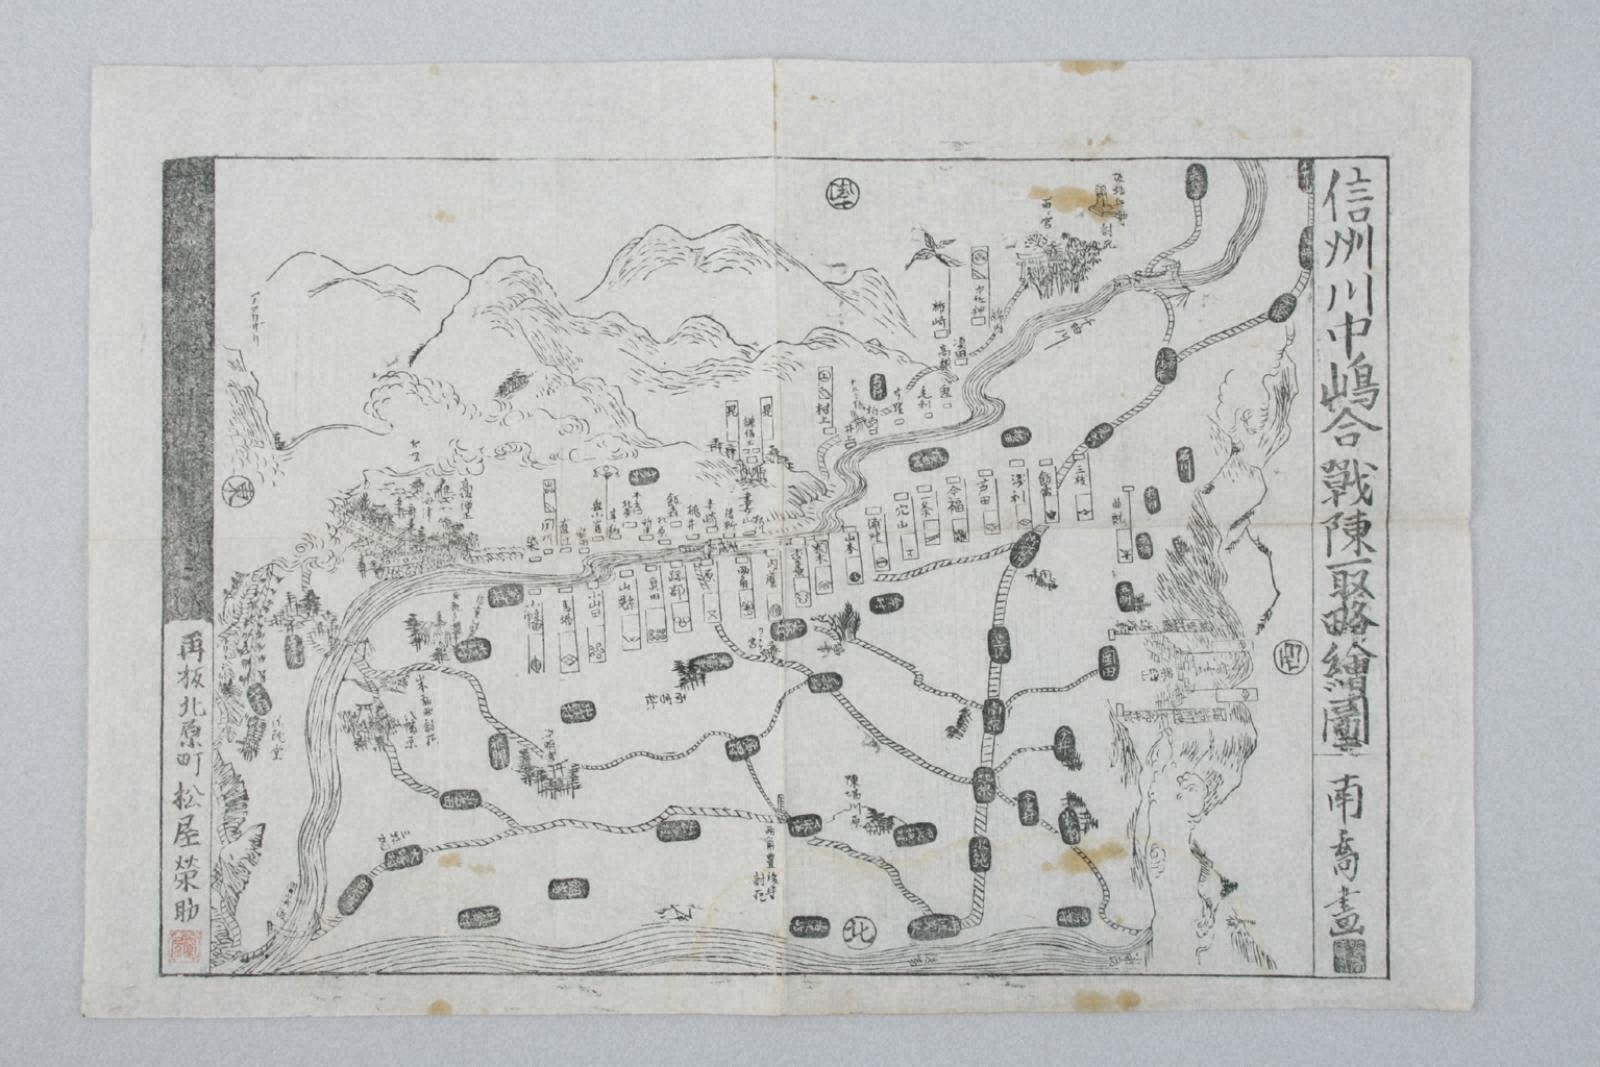 地図 - デジタル博物館 - 【川中島の戦い】総合サイト | Battle of Kawanakajima - 長野市